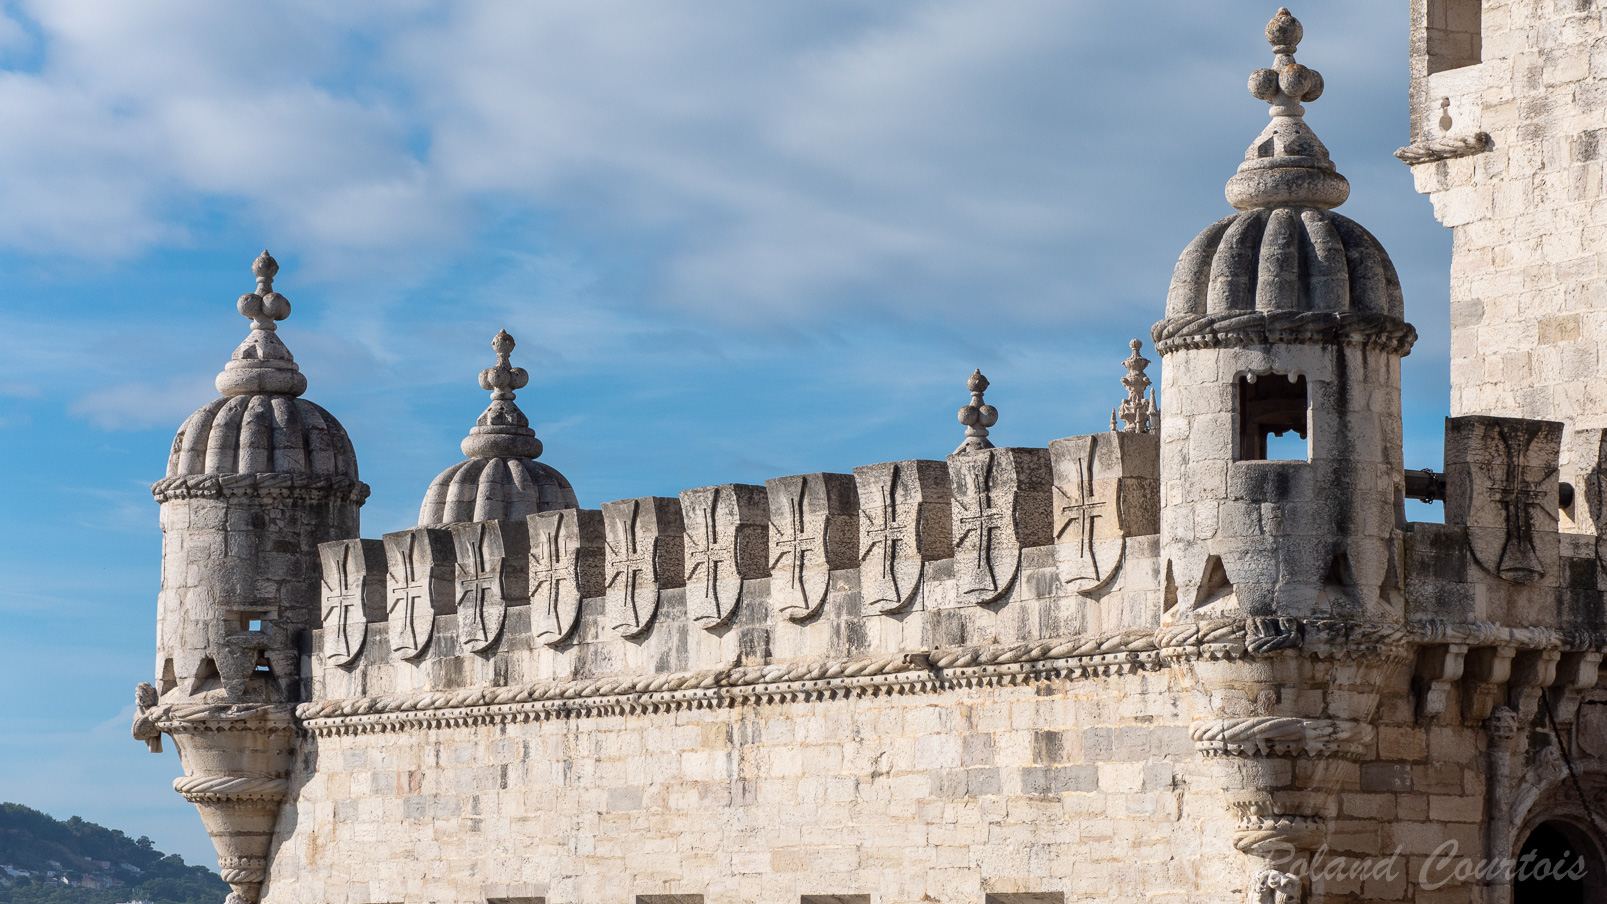 La tour de Belém est considérée comme étant l'une des œuvres majeures du style manuélin.